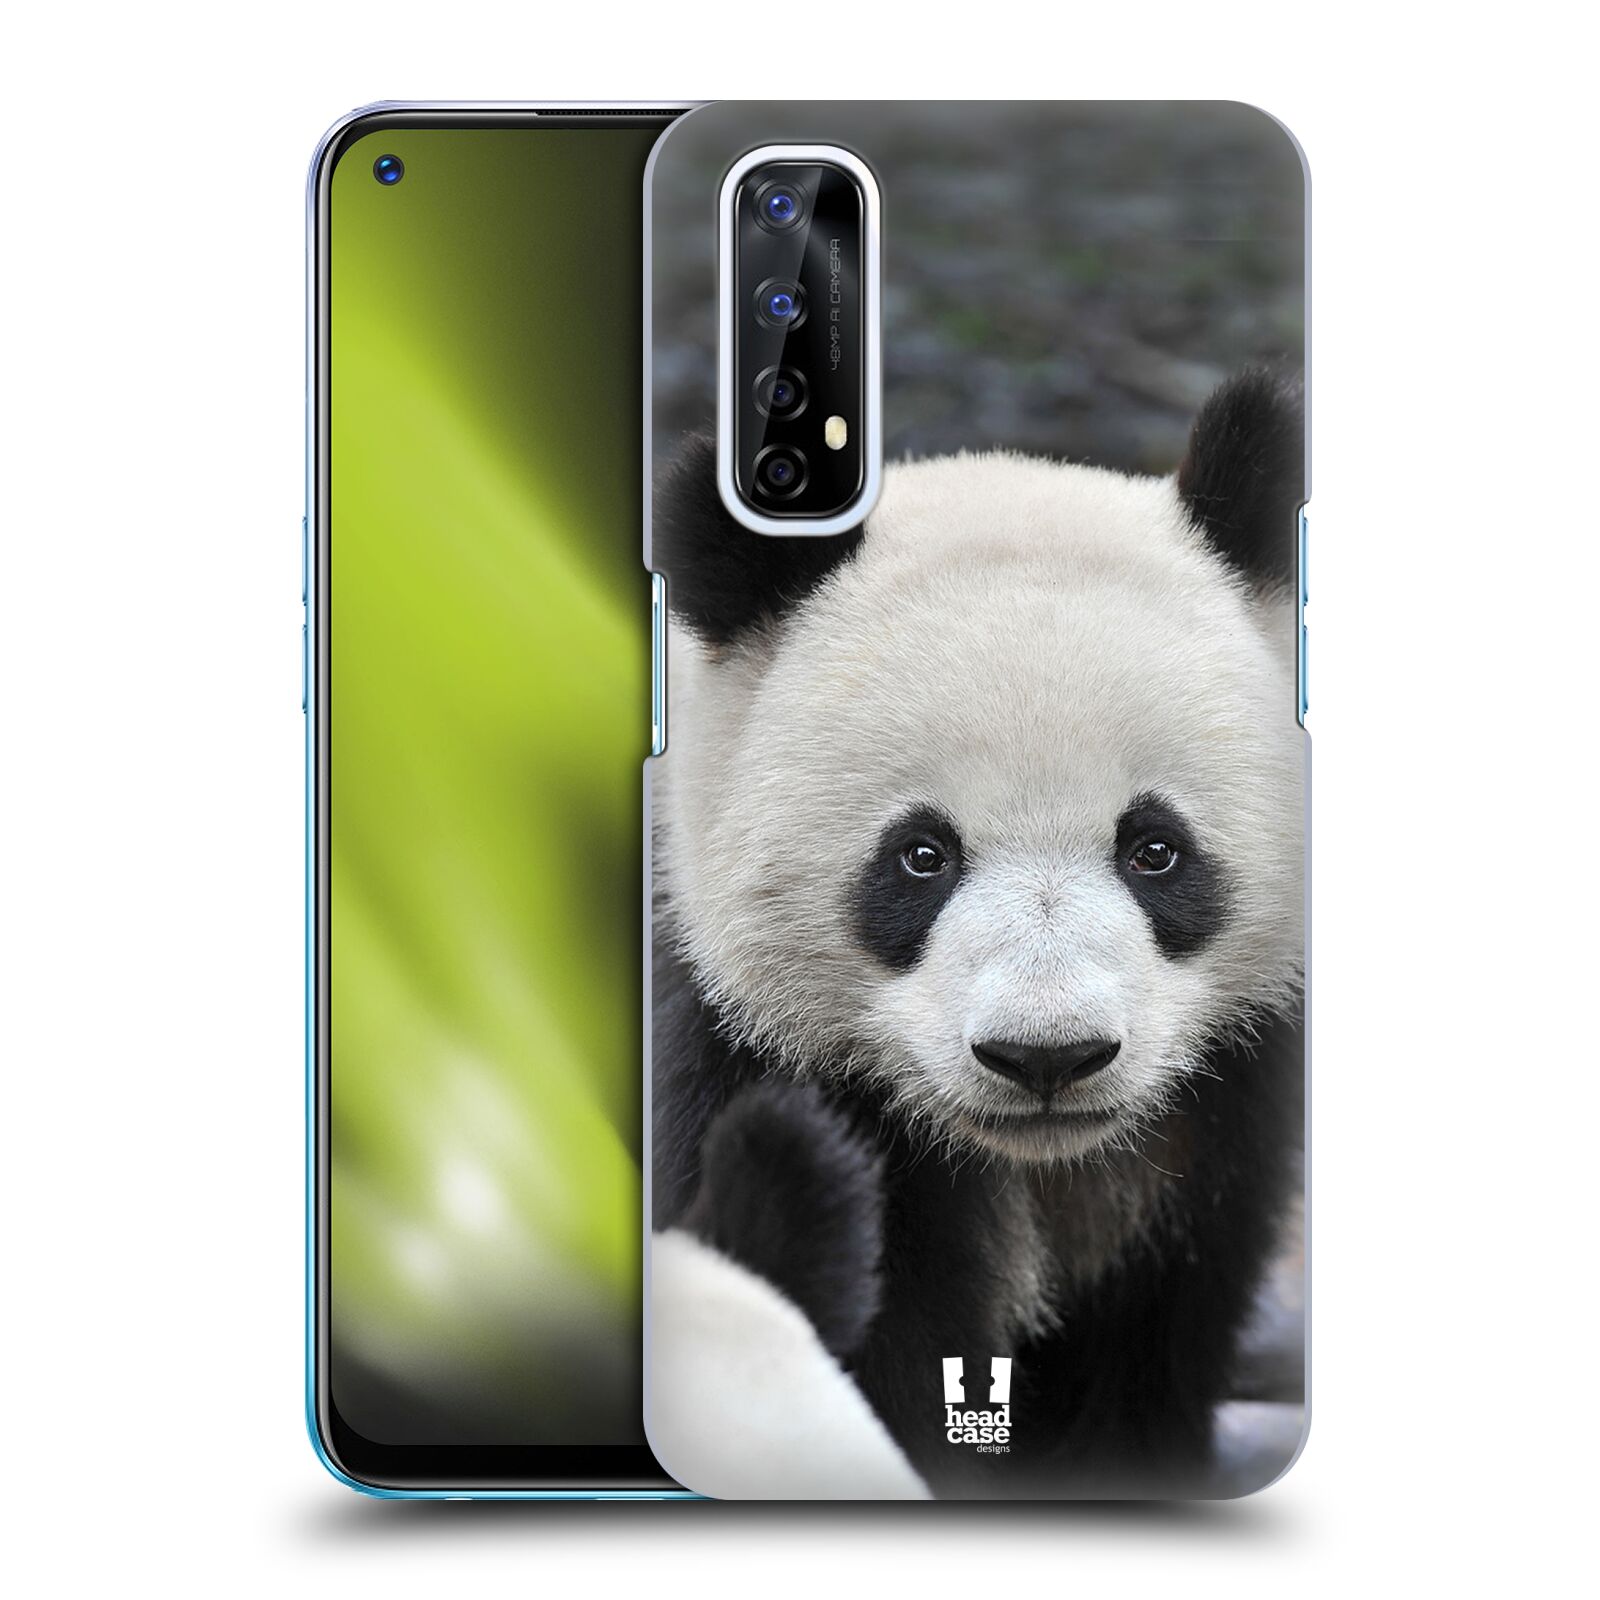 Zadní obal pro mobil Realme 7 - HEAD CASE - Svět zvířat medvěd panda